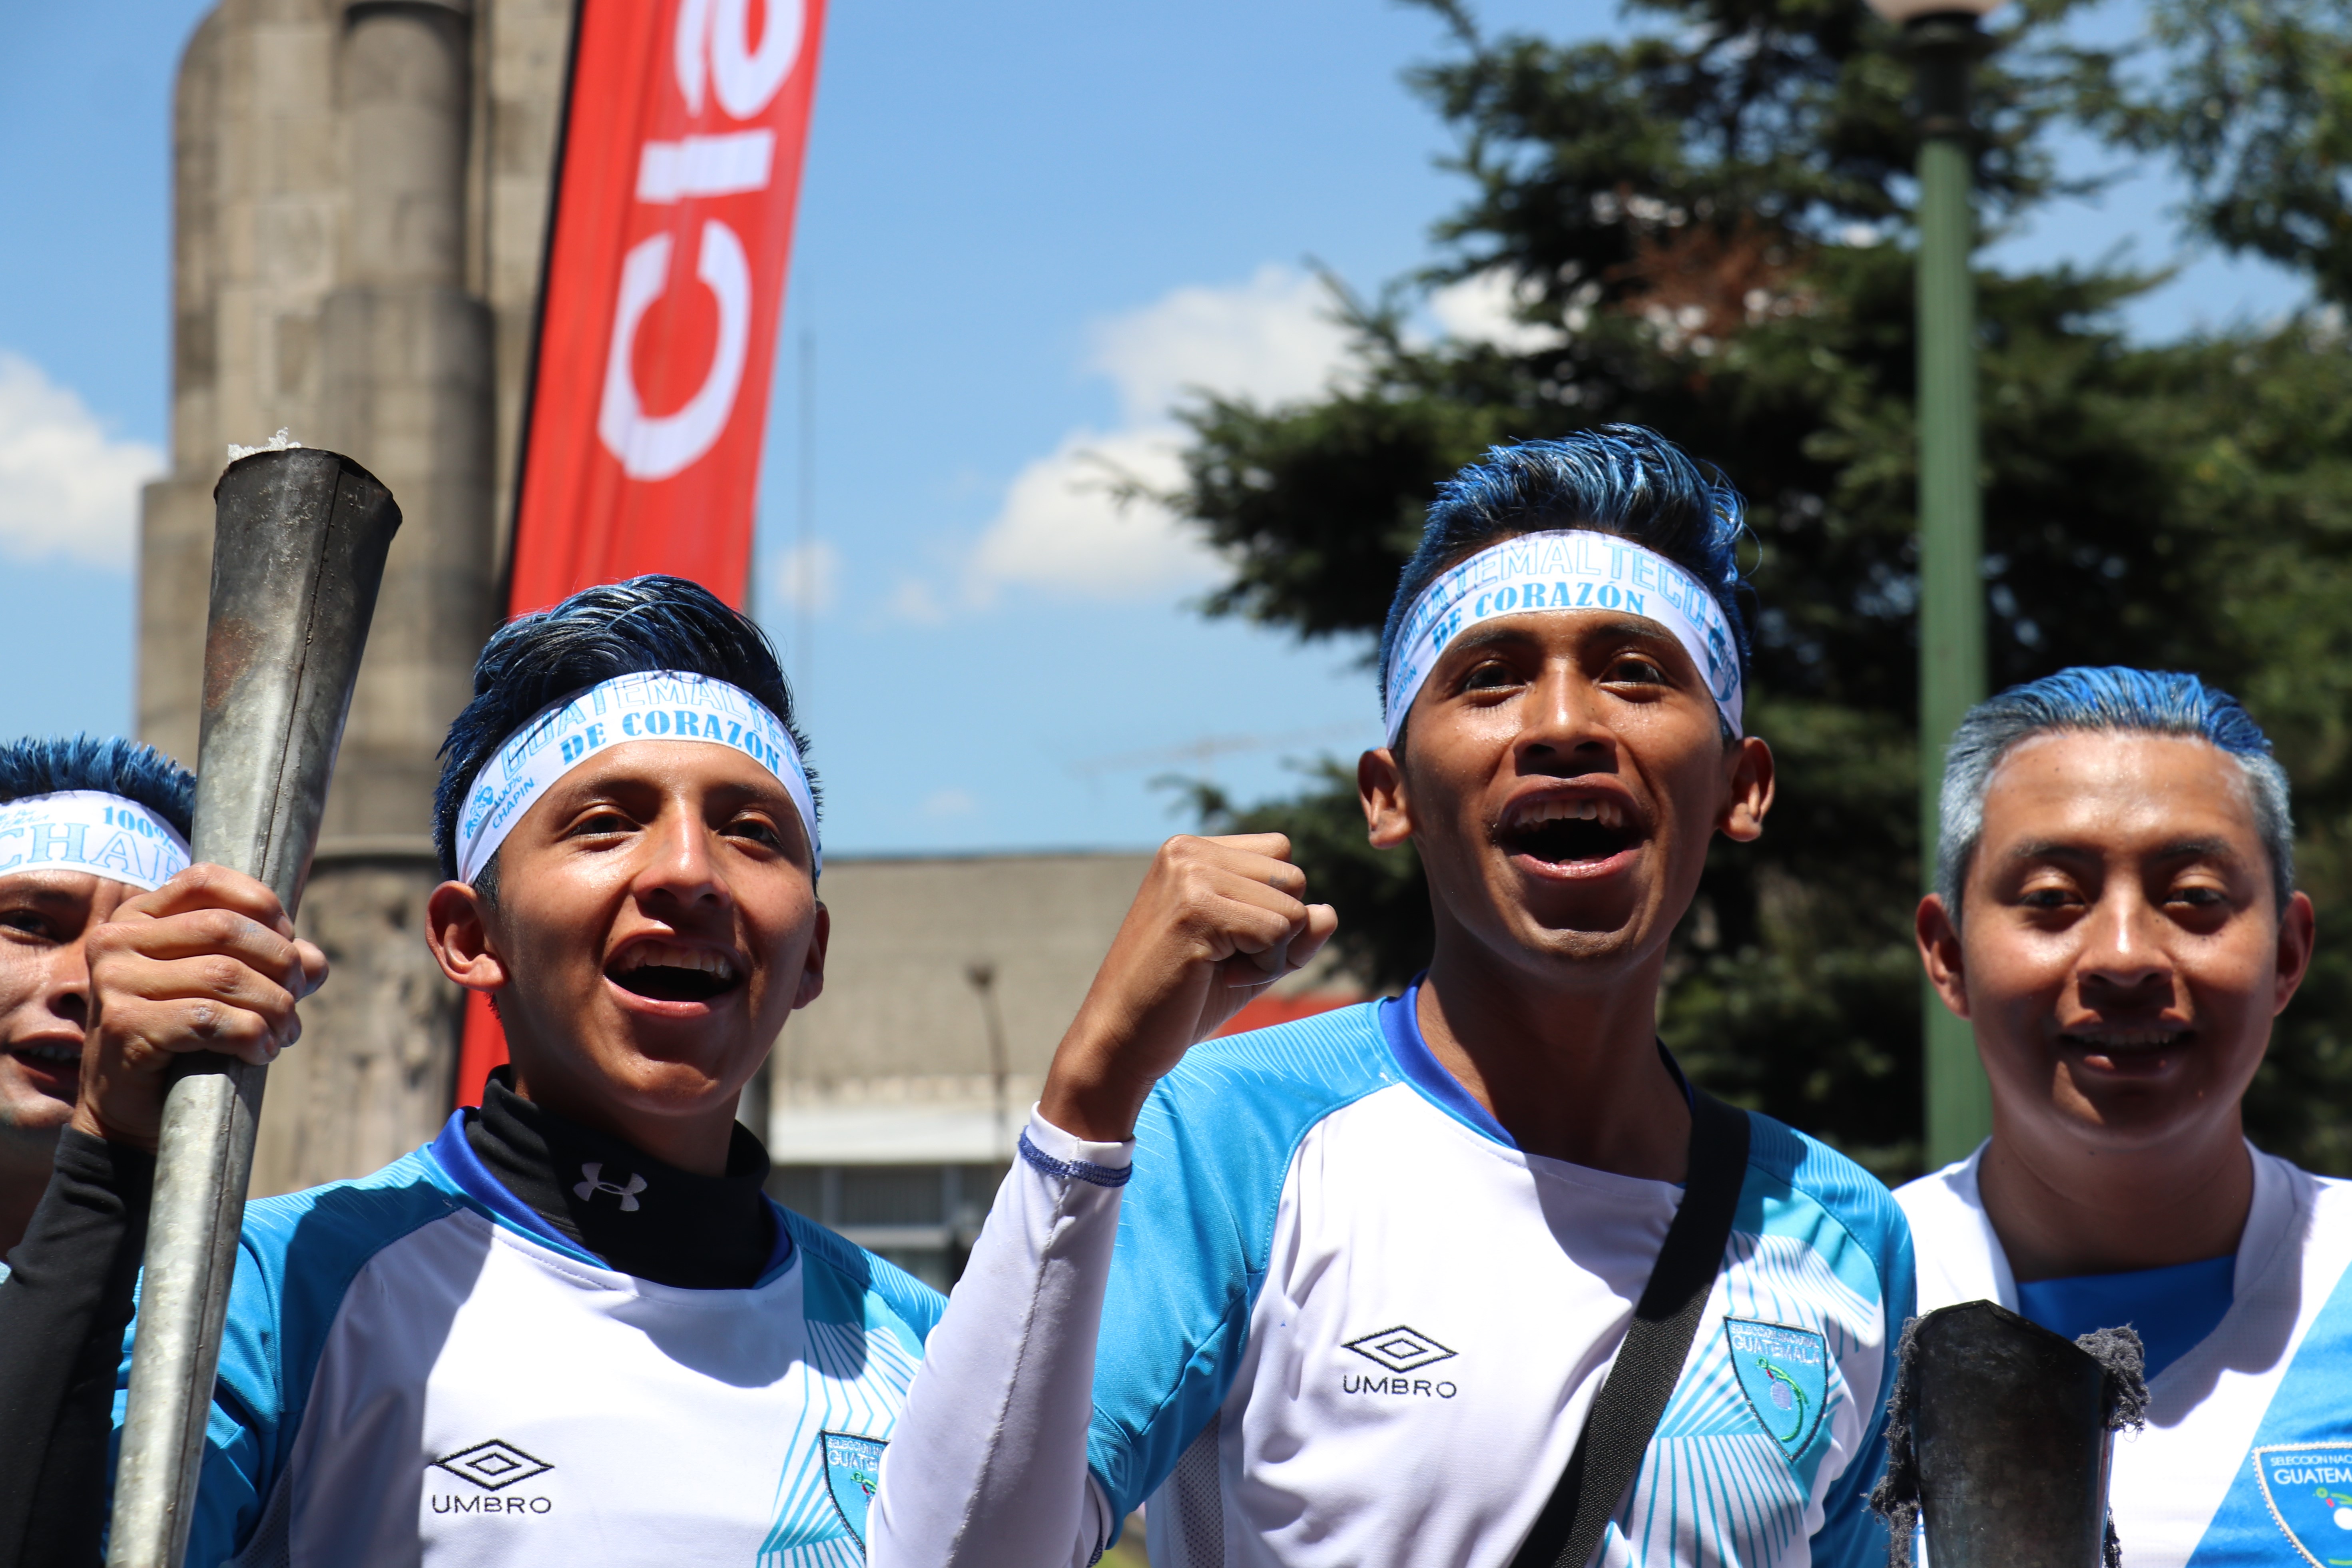 Los jóvenes visten los colores de Guatemala para mostrar su patriotismo. (Foto Prensa Libre: Raúl Juárez)